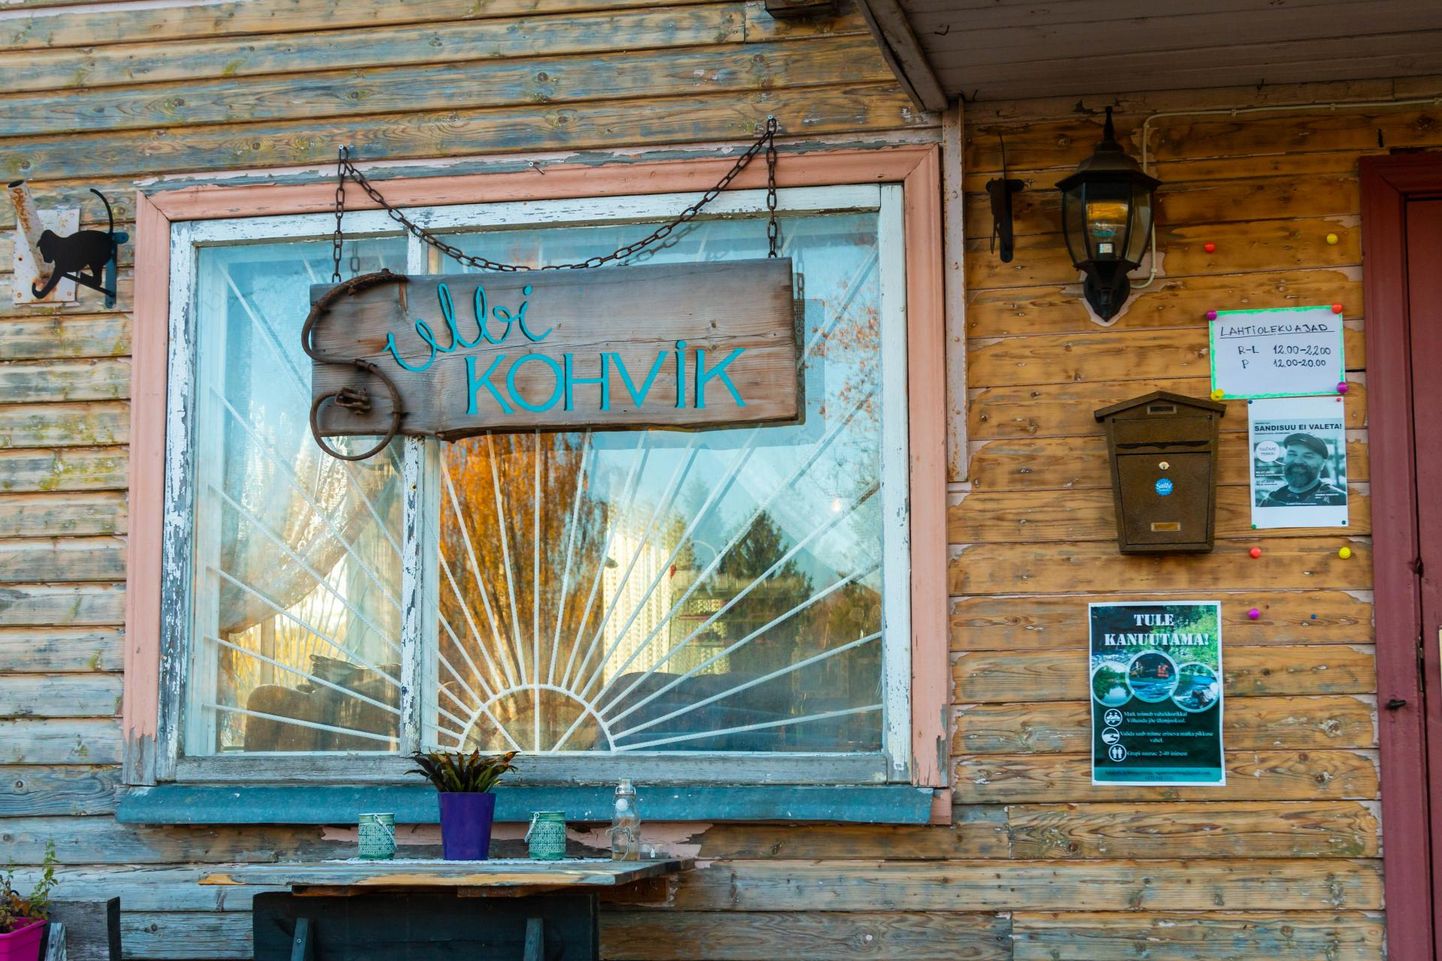 Üks Uma Mekk kohvikute ja restoranide nädala osaleja on ka Sulbi kohvik Võrumaal.